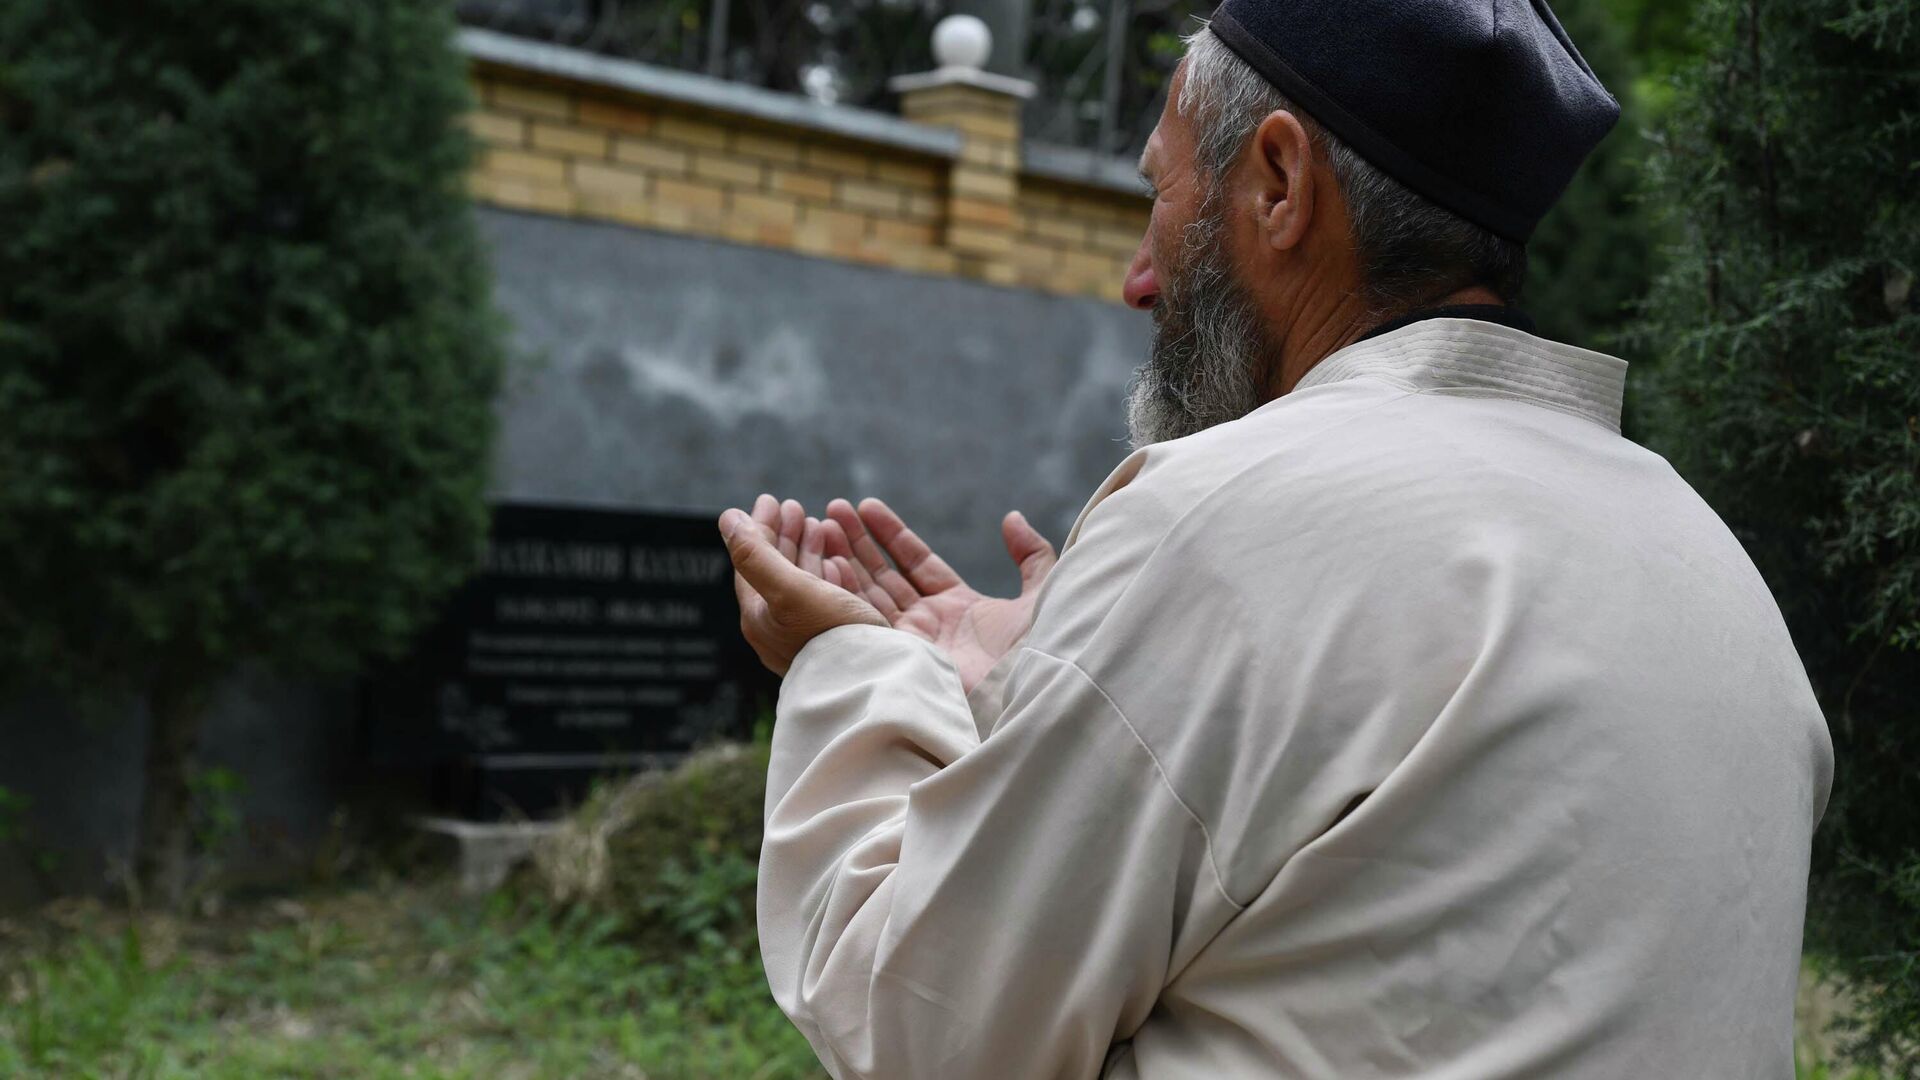 Мужчина молится на кладбище - Sputnik Таджикистан, 1920, 19.06.2021